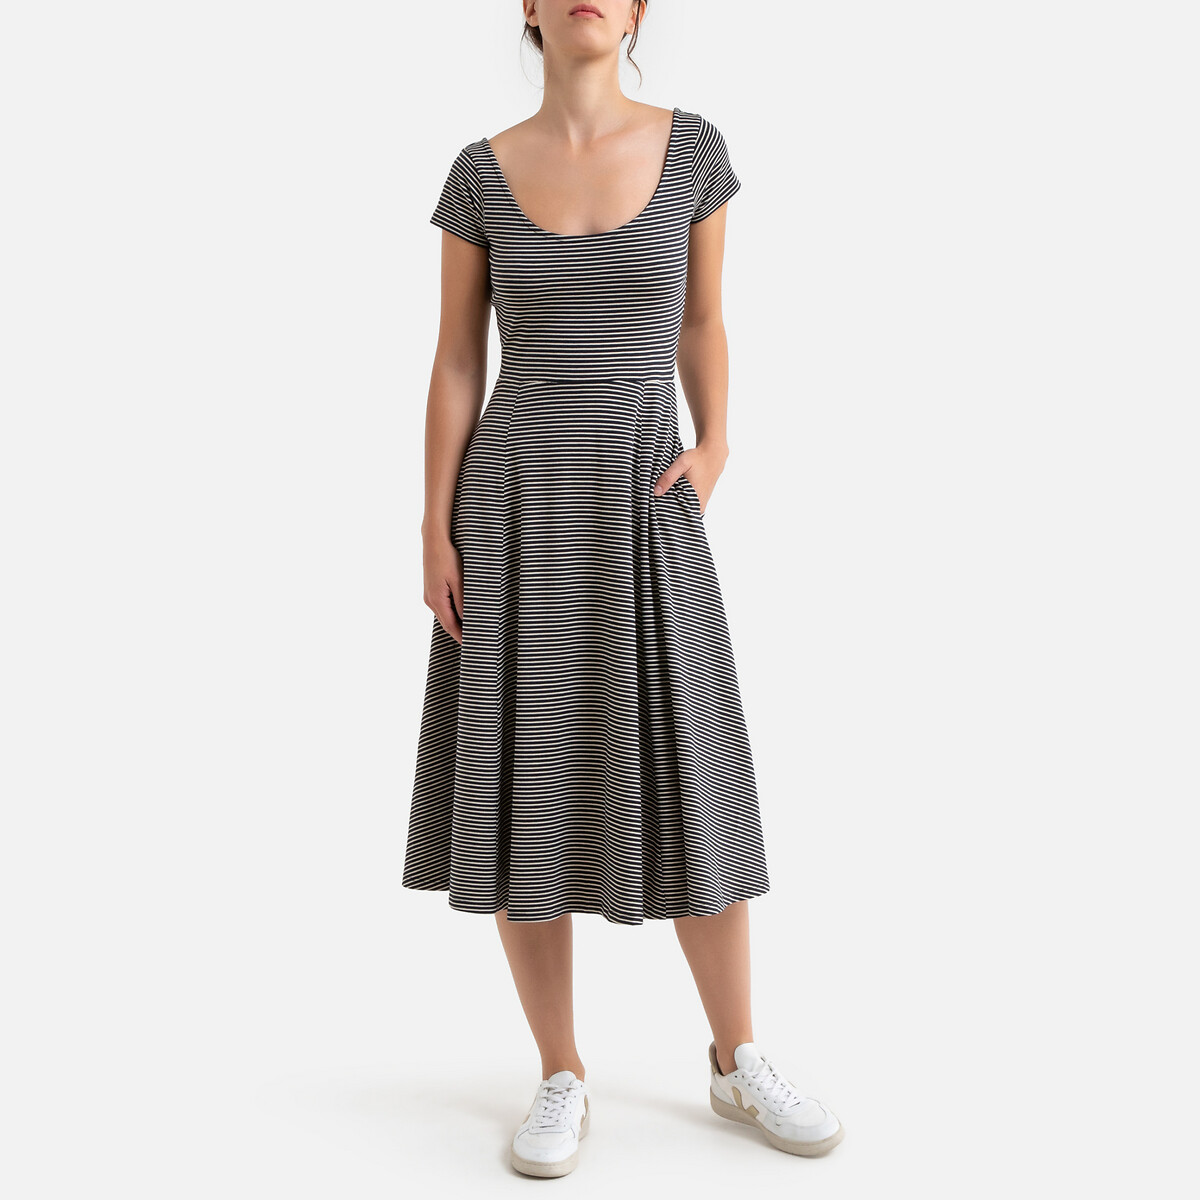 Платье La Redoute Длинное расклешенное в полоску с короткими рукавами XS бежевый, размер XS - фото 1